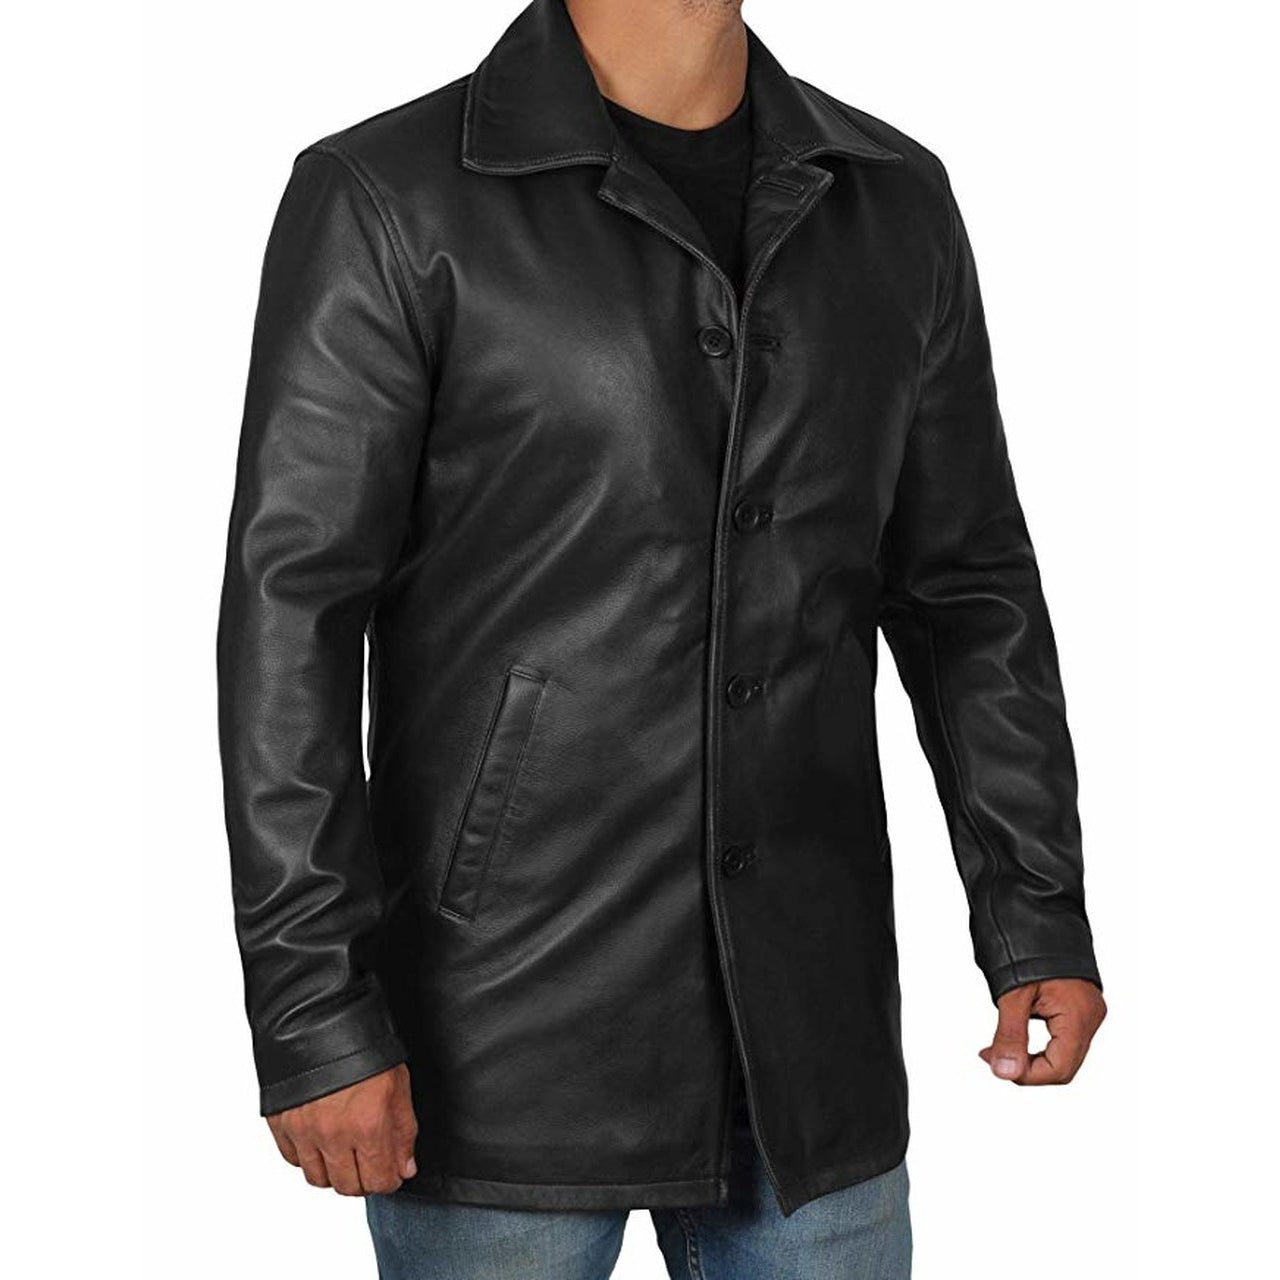 Coat Style Black Leather Jacket for Men - Leather Jacket